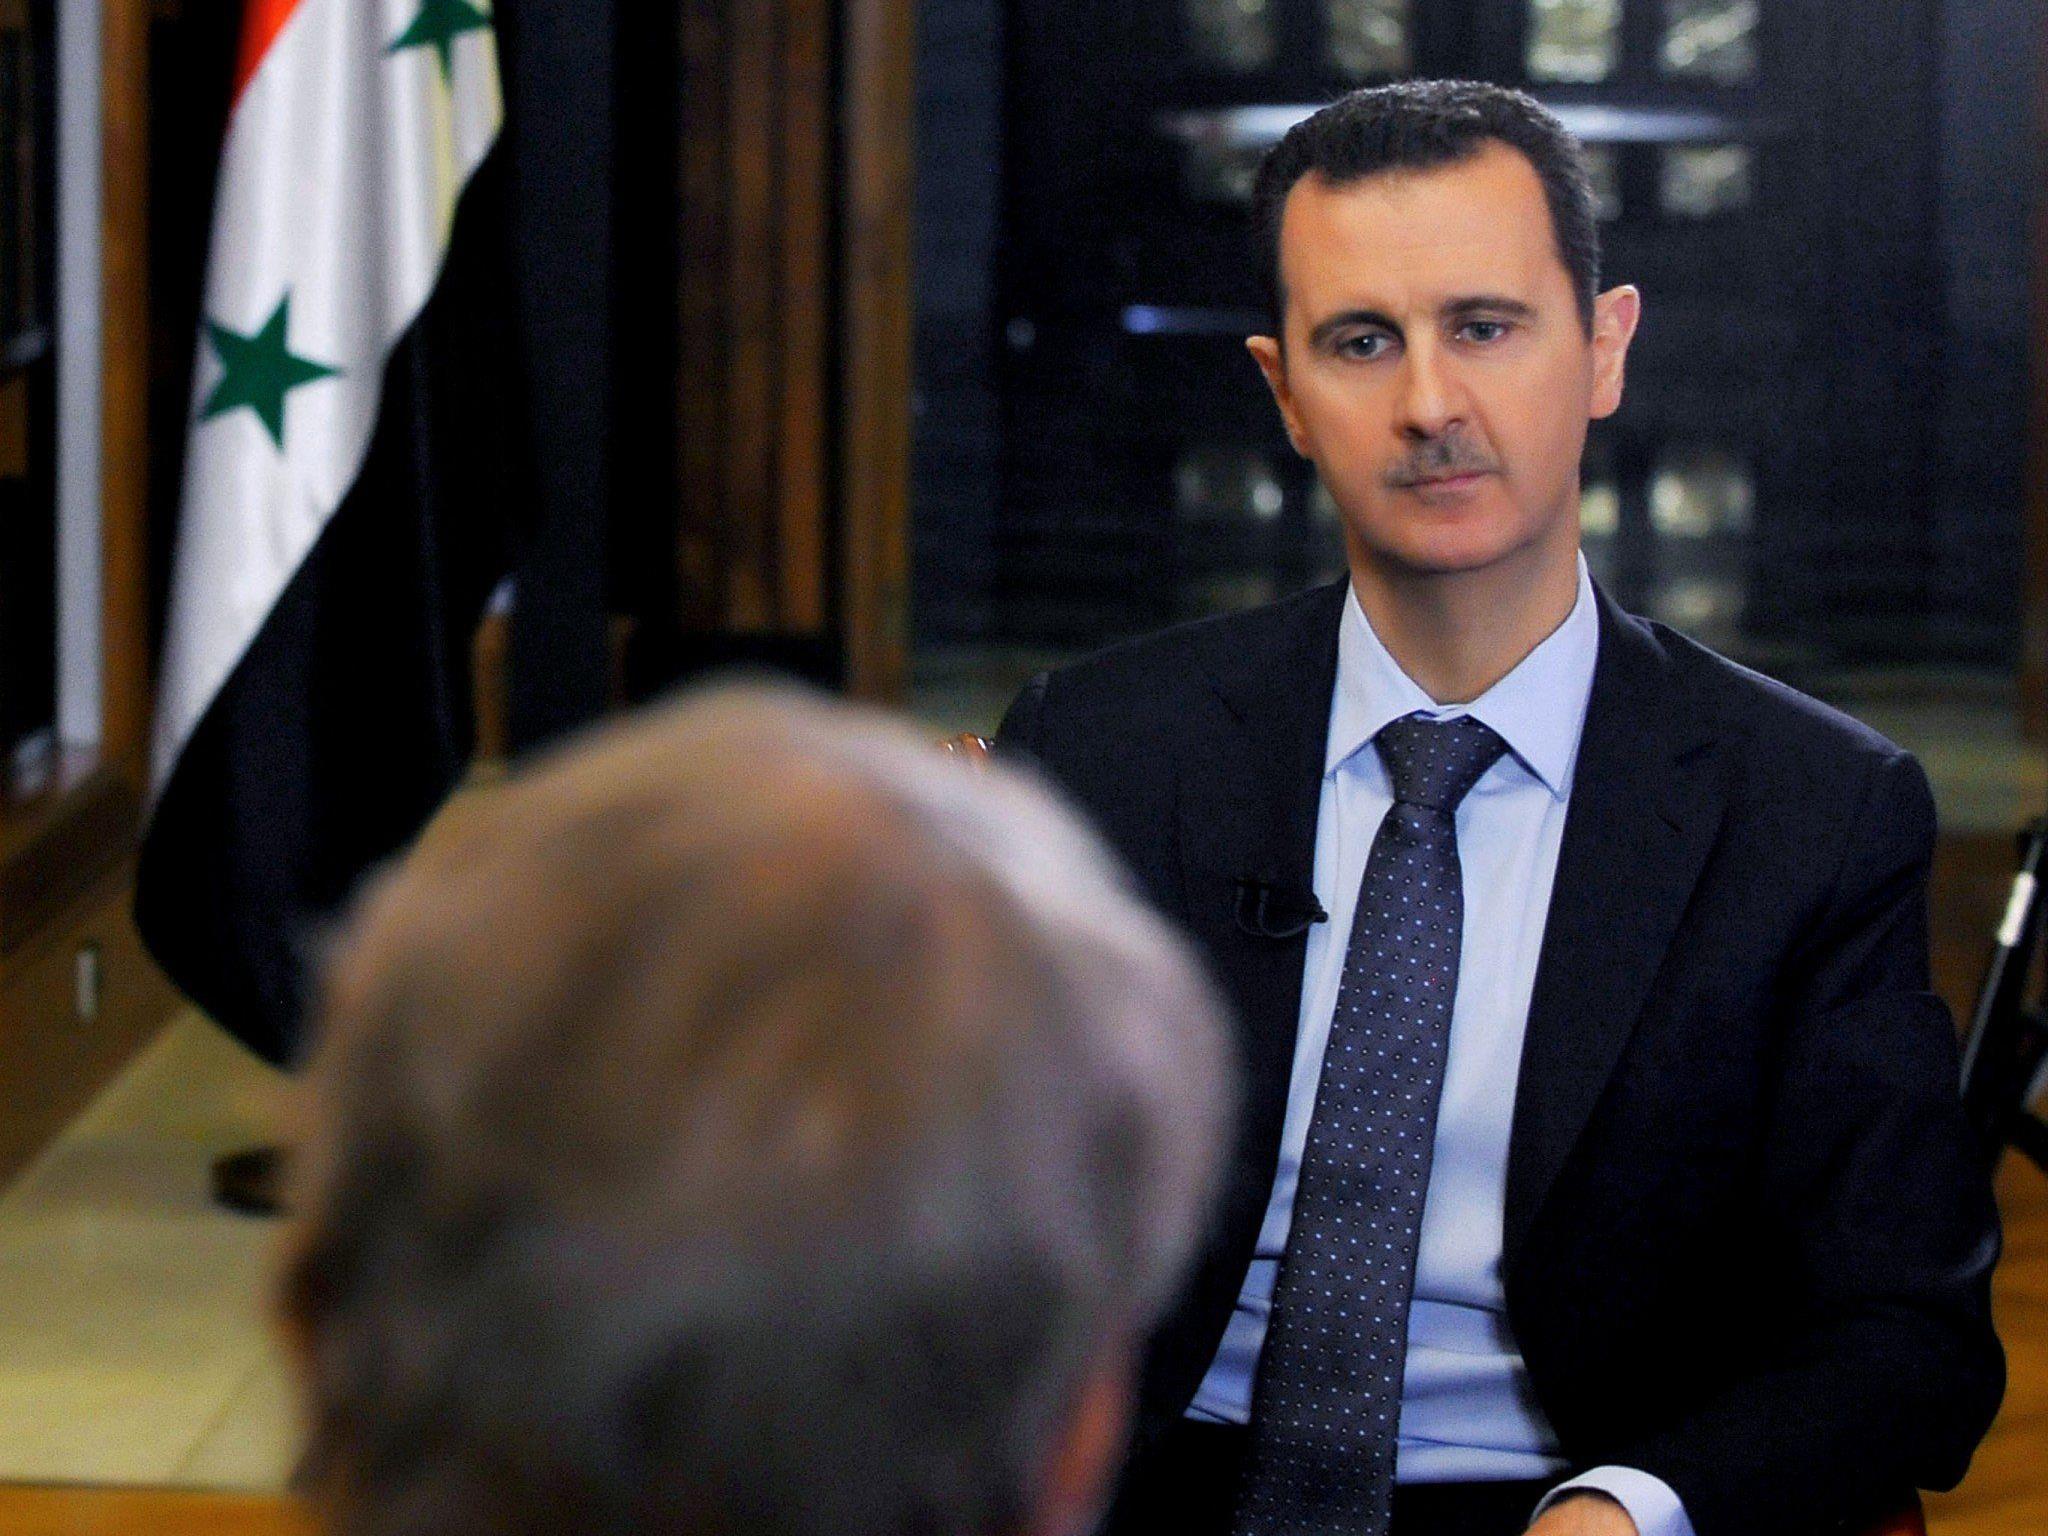 Syrien will seine Chemiewaffen offenbar unter internationale Kontrolle stellen.